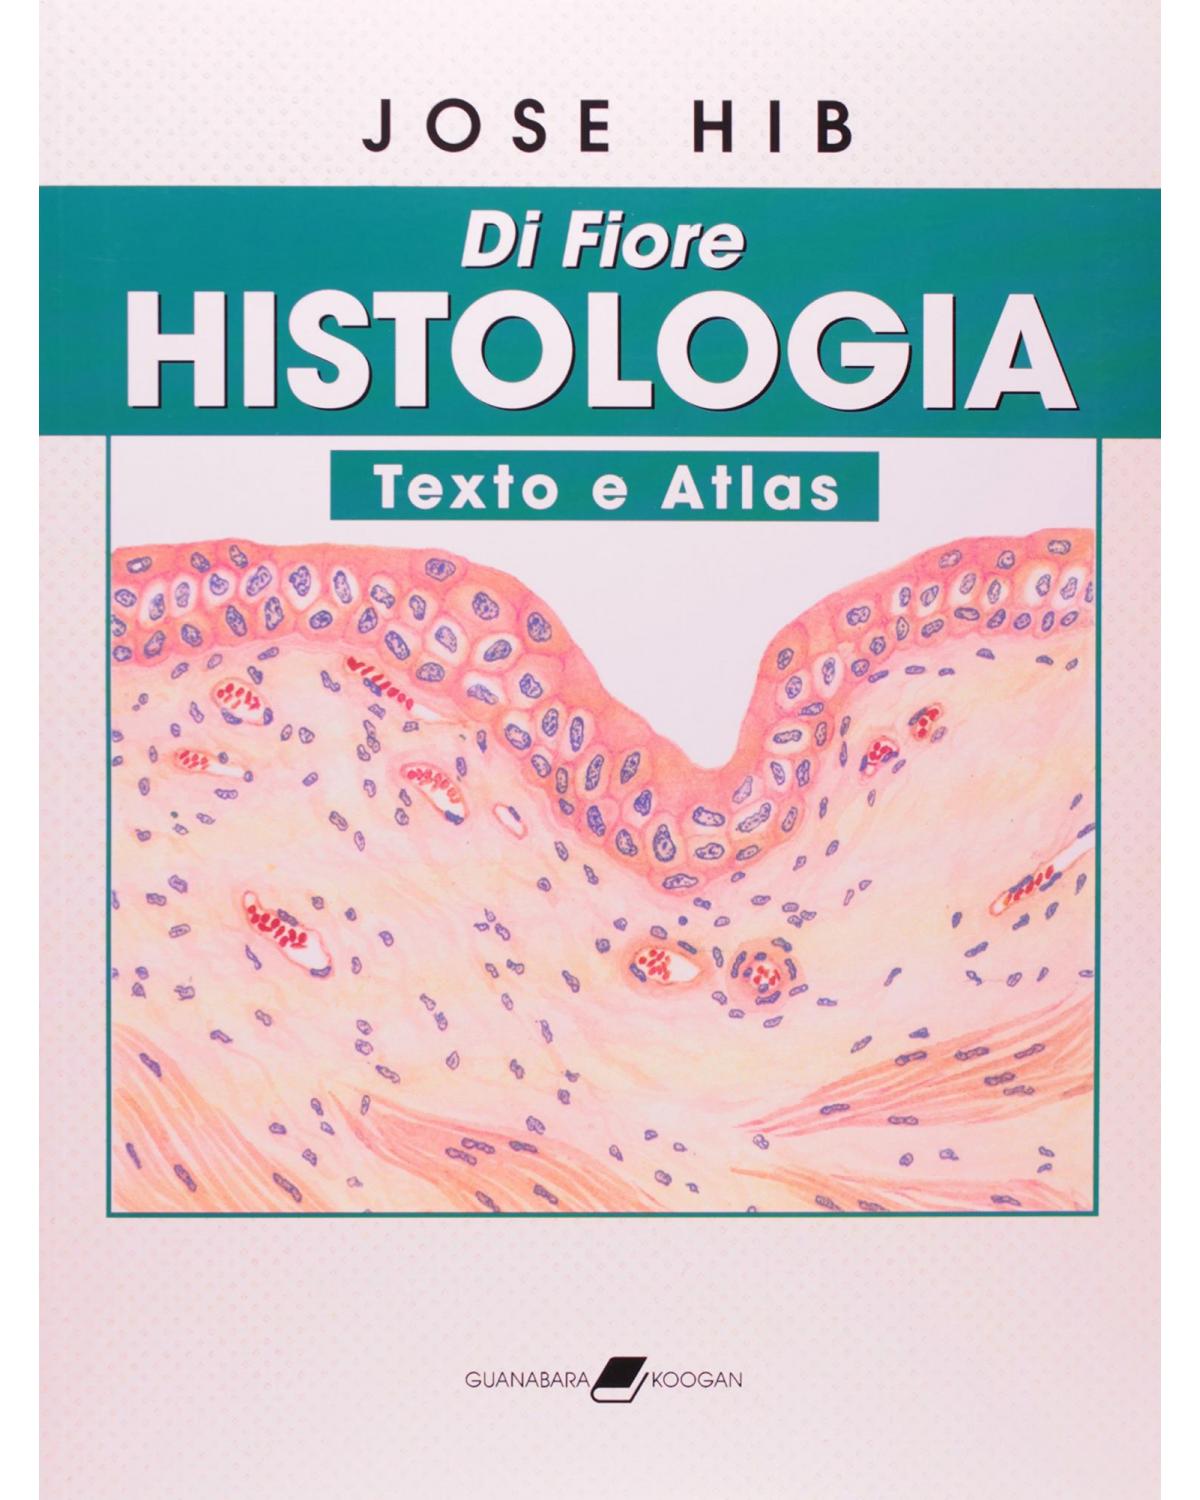 Di Fiore - Histologia - Texto e atlas - 1ª Edição | 2003